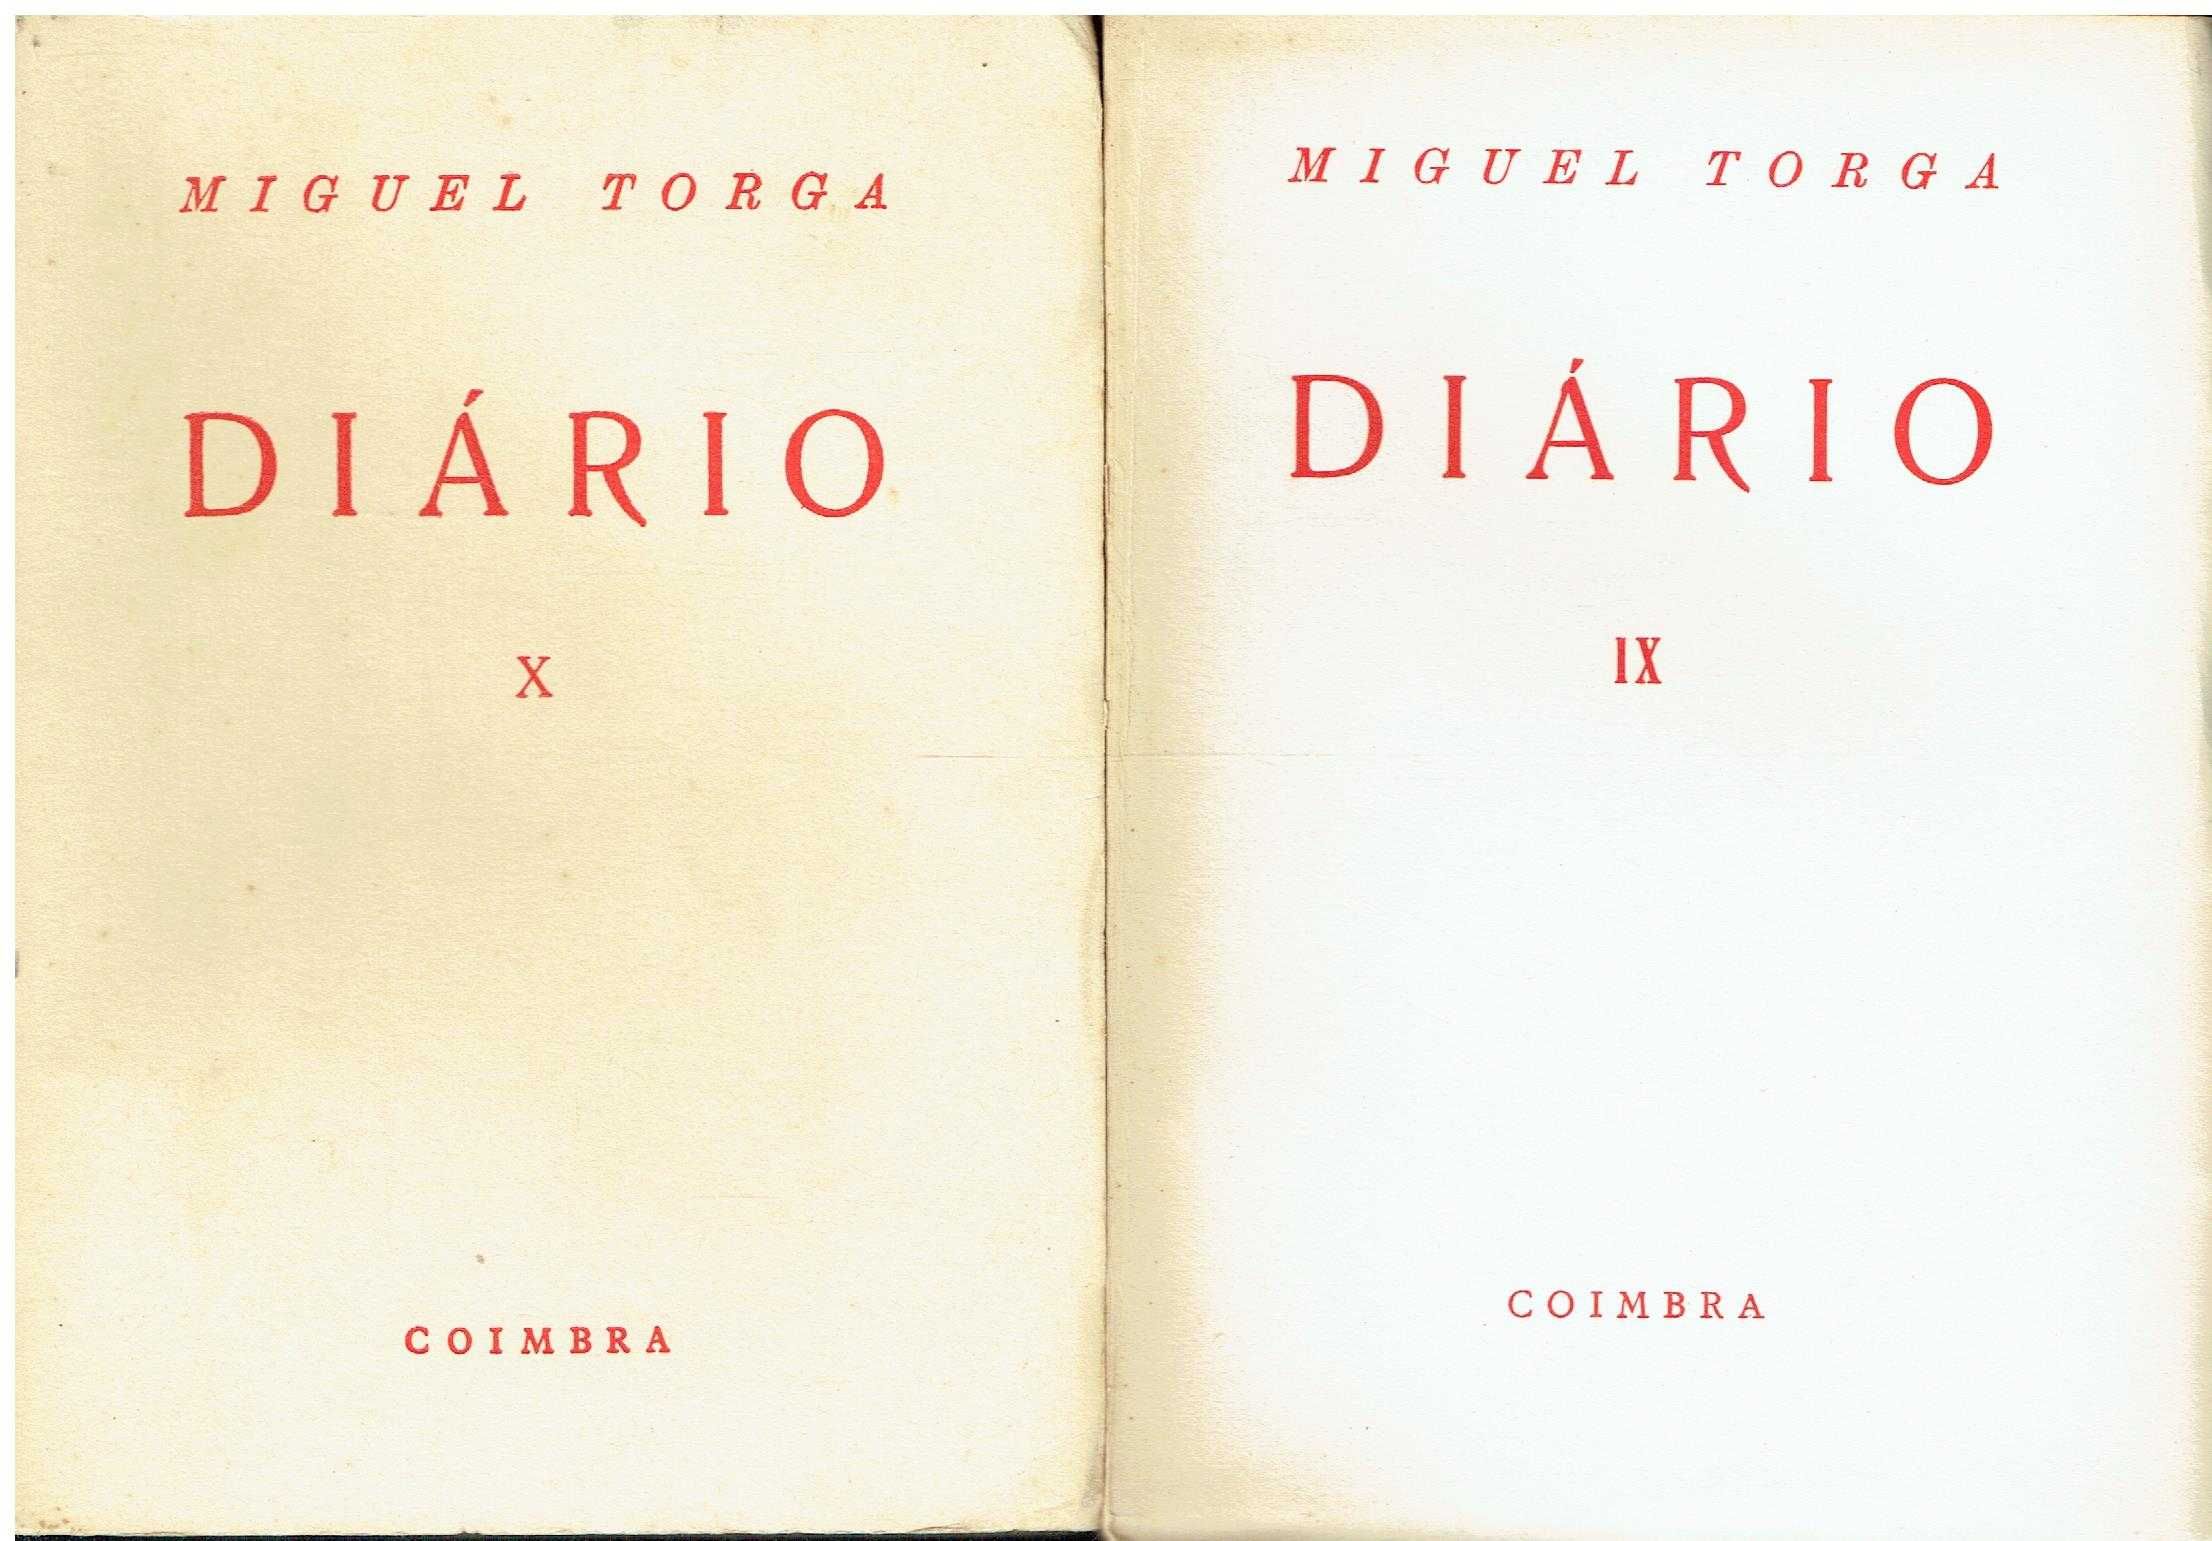 4906

Diário 
de Miguel Torga